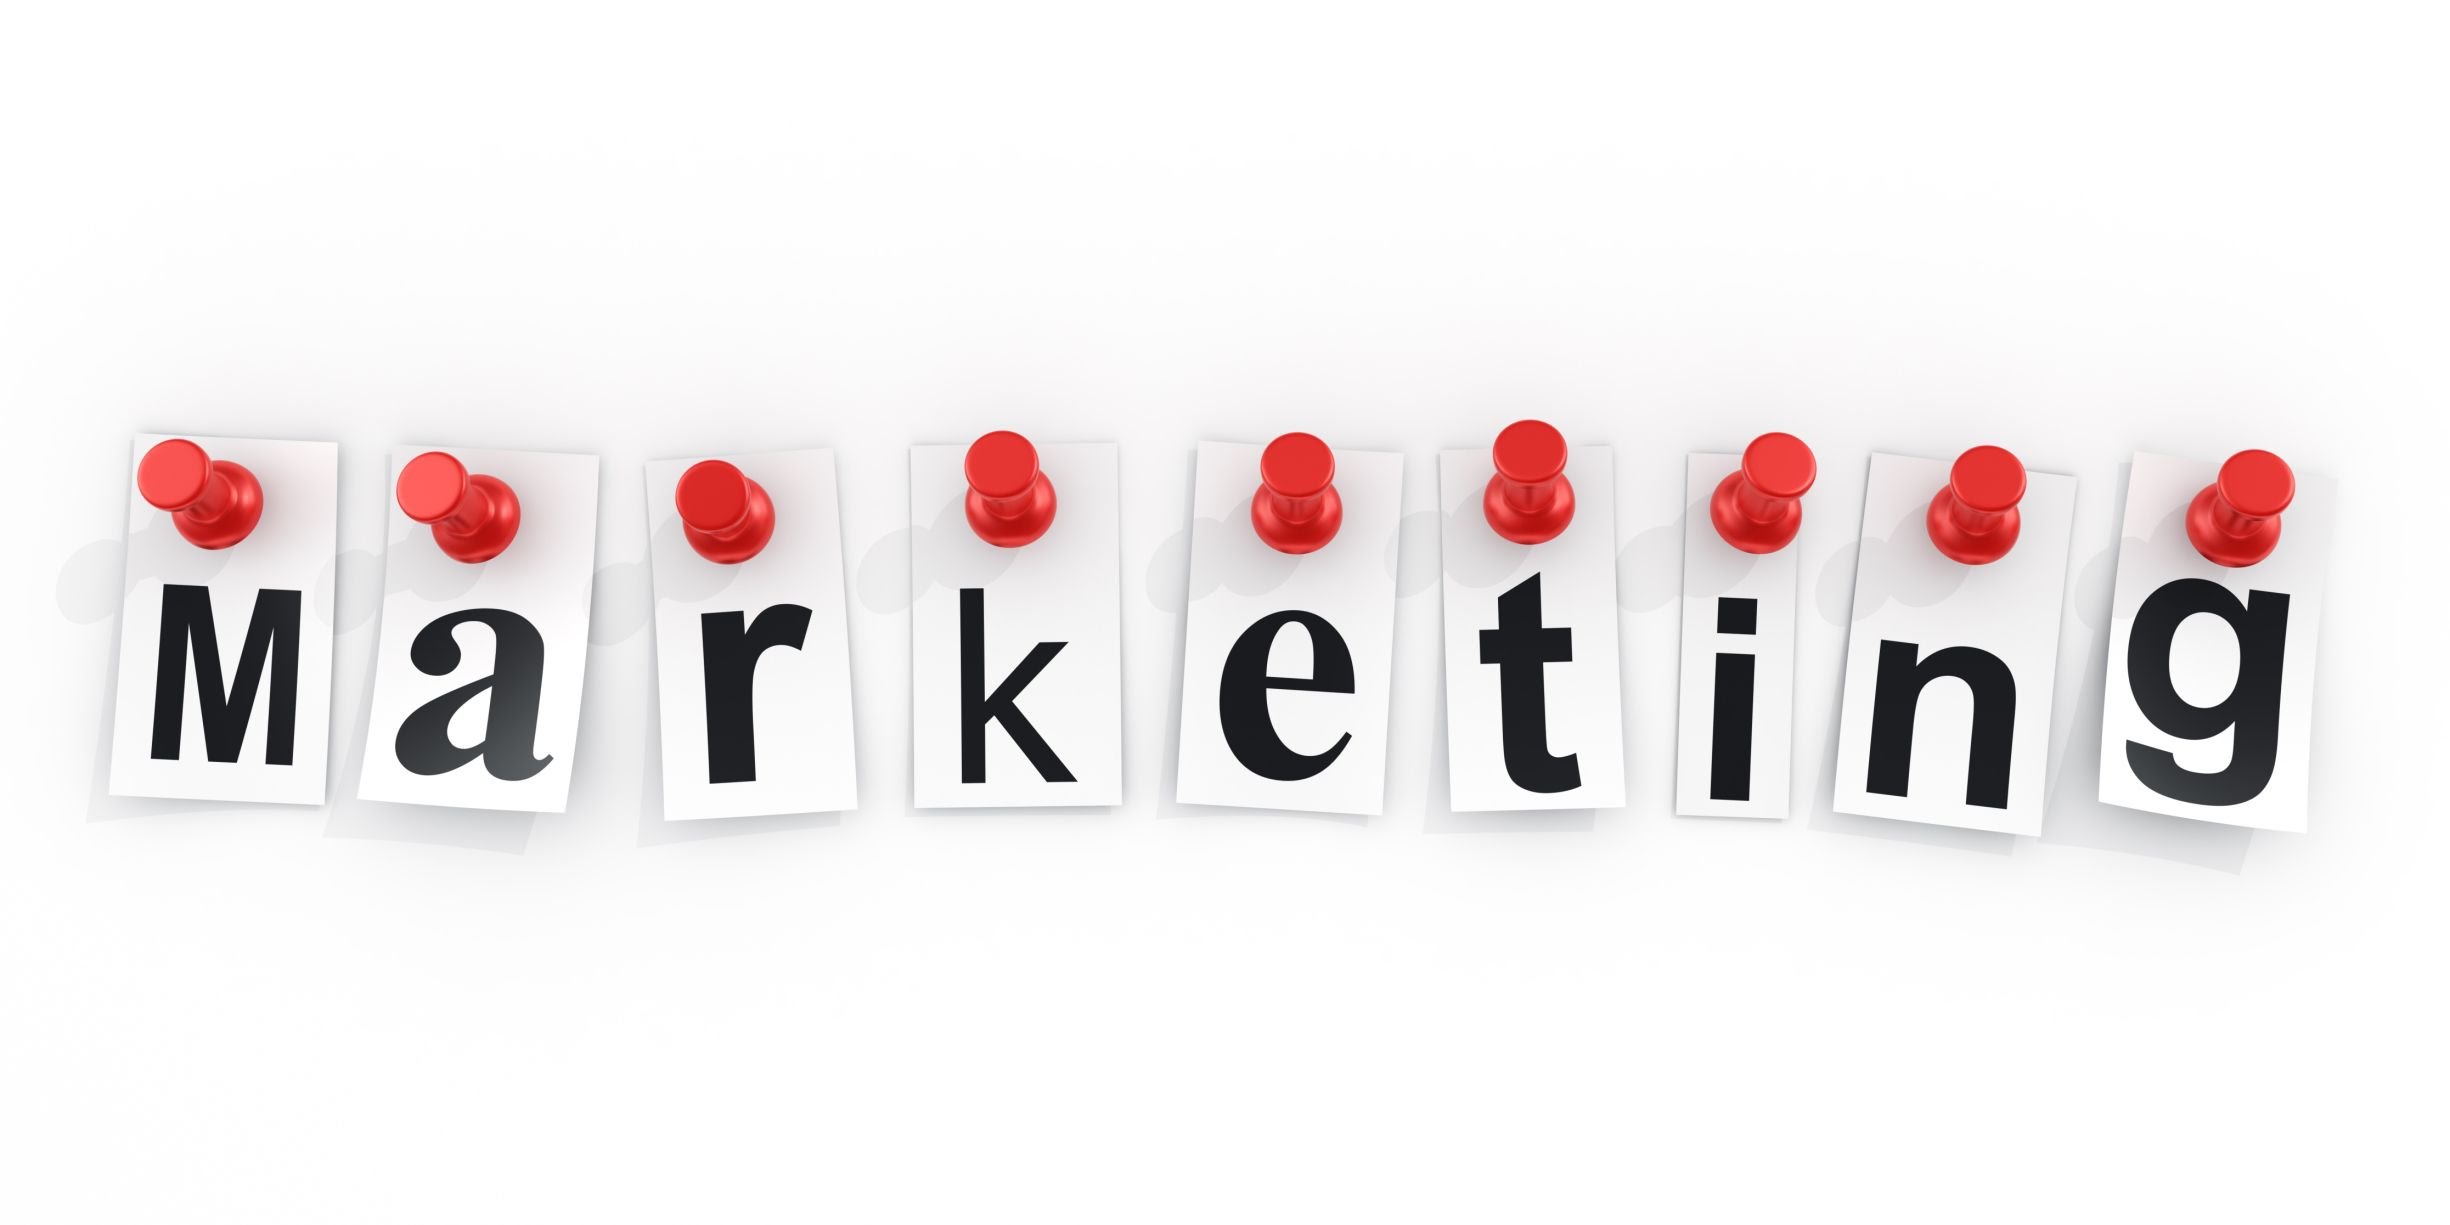 Servicios de marketing: obtén mejores resultados en tus campañas